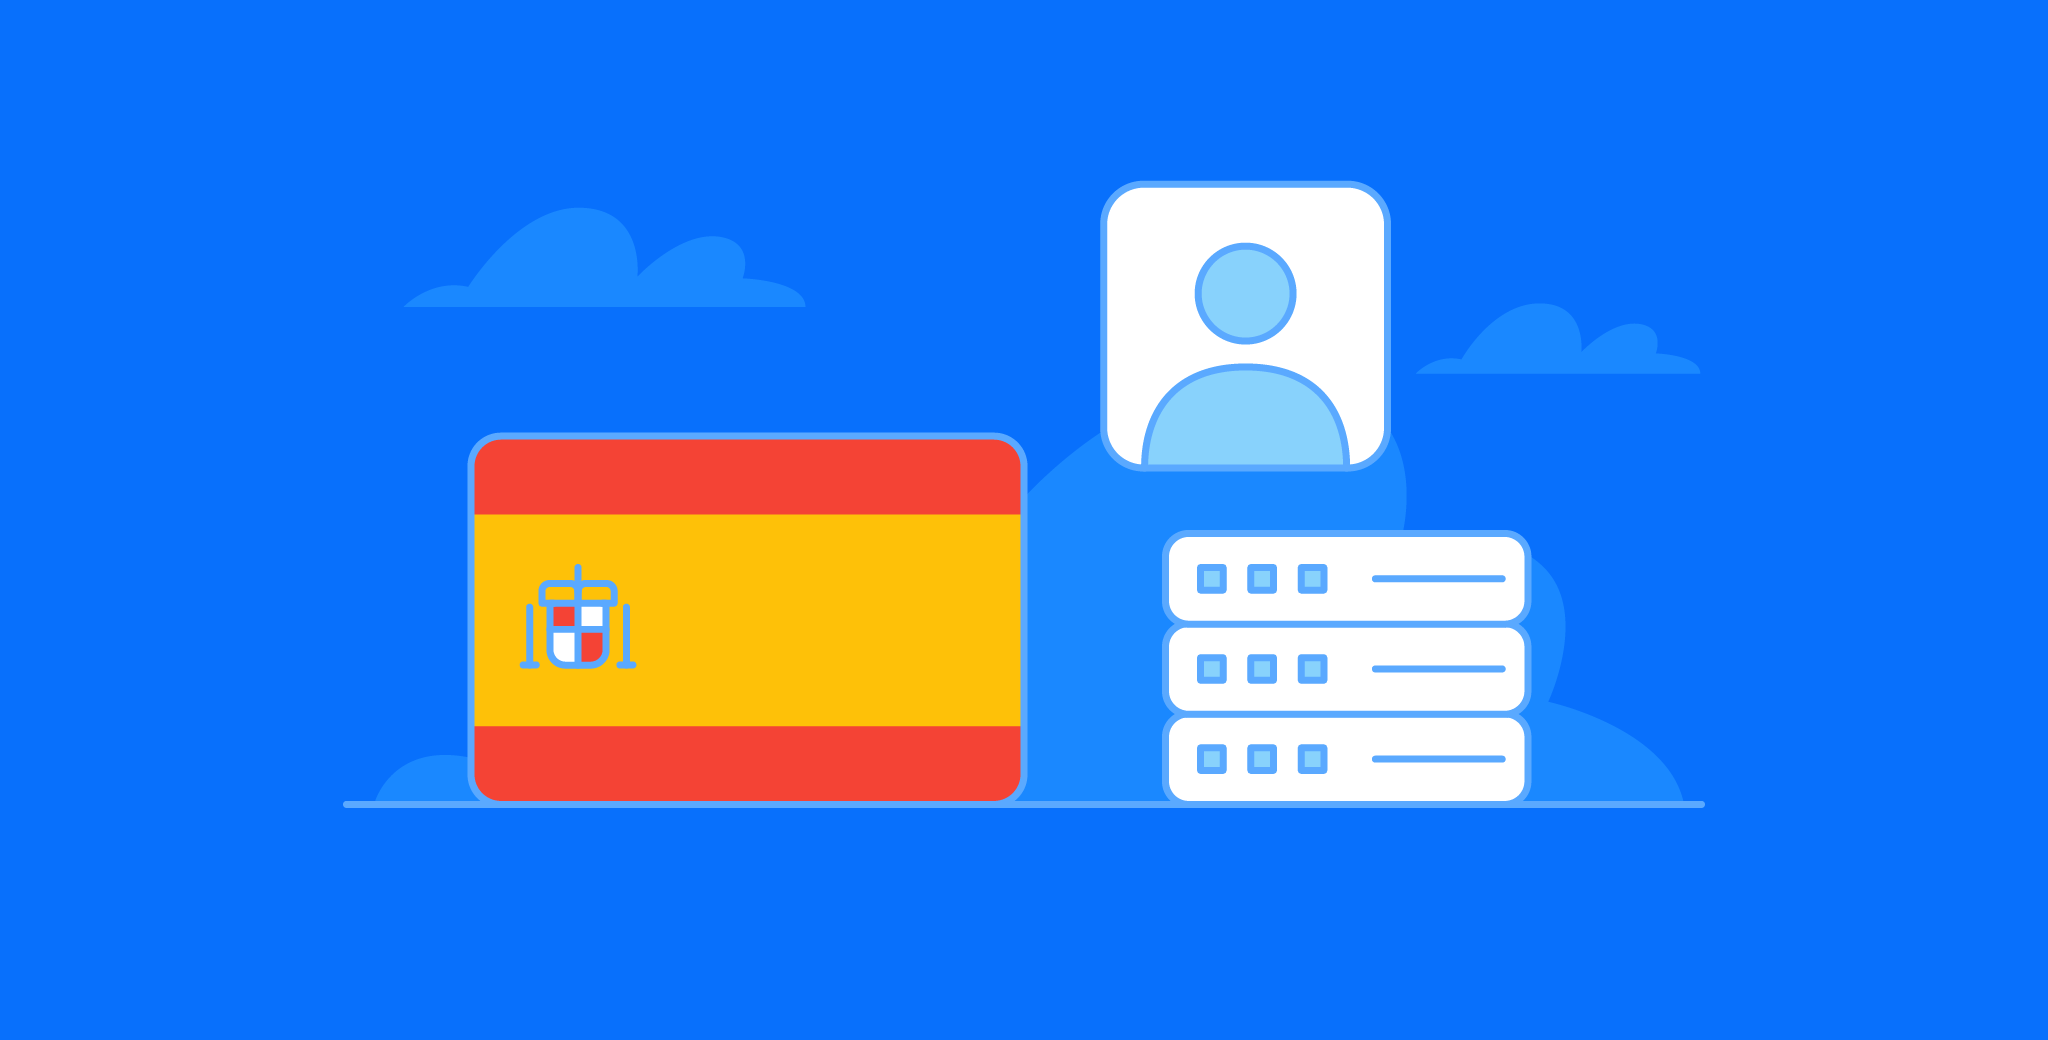 Spain LinkedIn People Profile Dataset